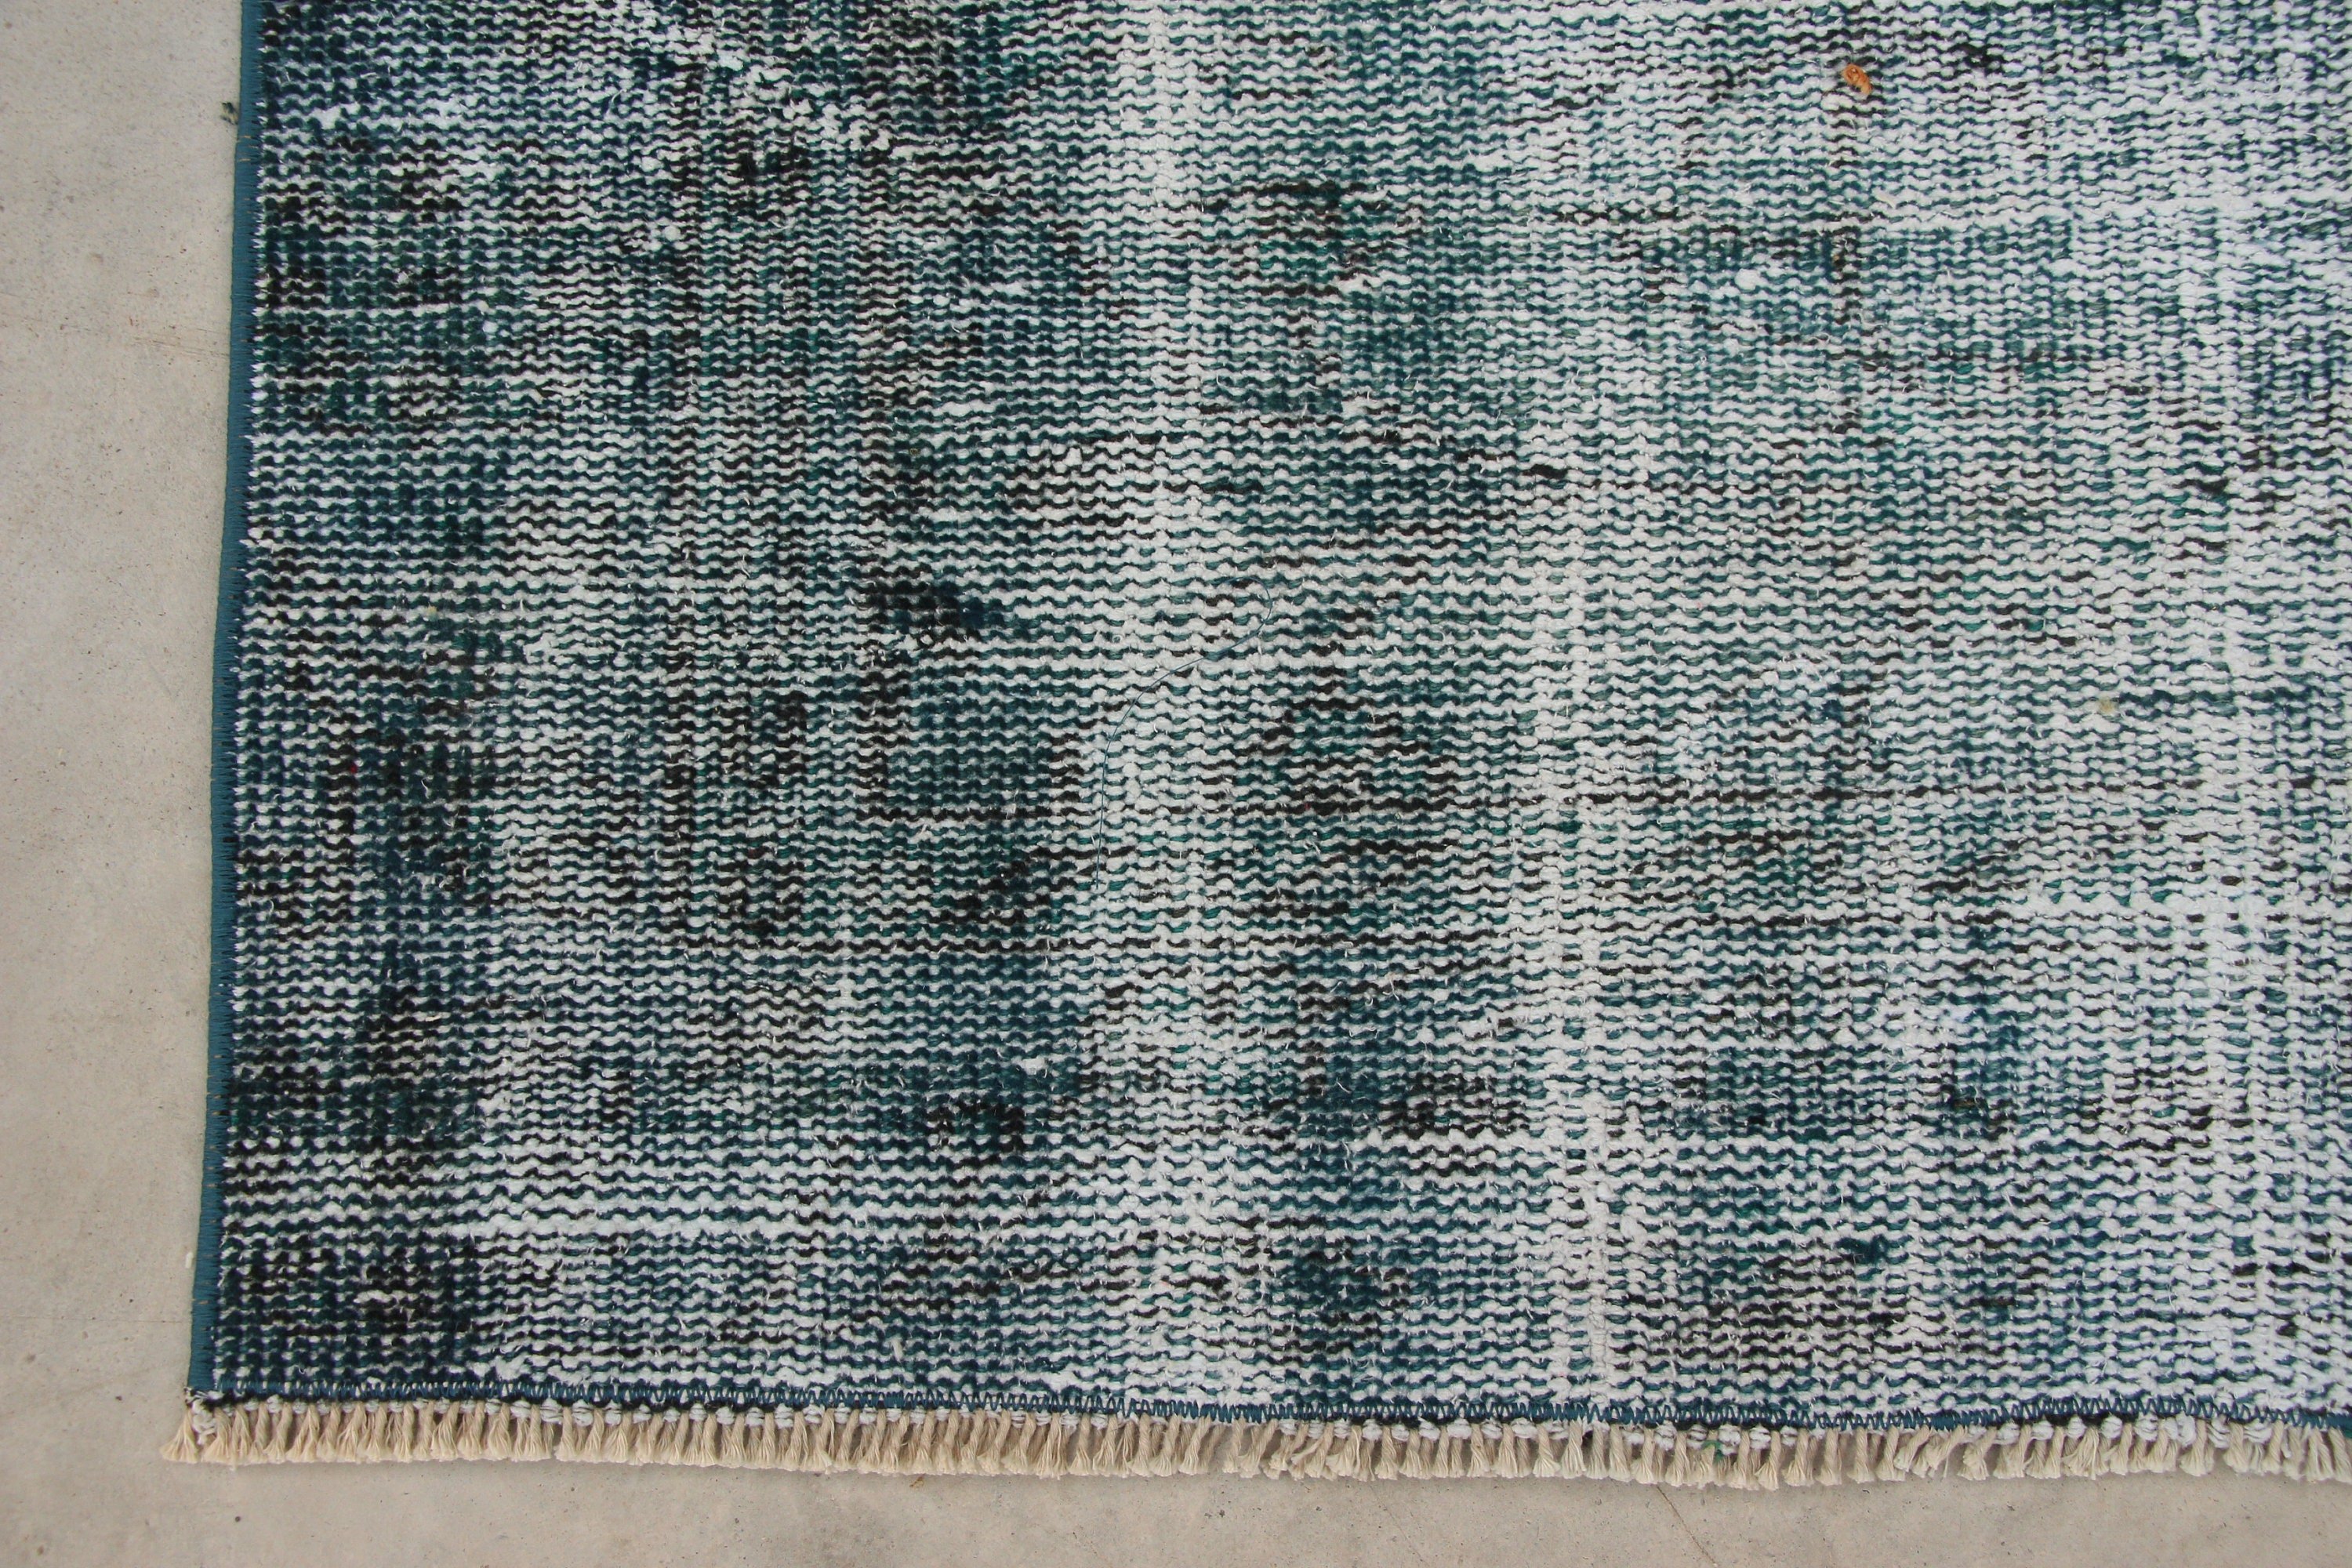 Oriental Rugs, Turkish Rugs, Rugs for Nursery, Blue Moroccan Rug, 4.4x8.5 ft Area Rugs, Vintage Rugs, Floor Rug, Hand Woven Rugs, Cool Rug